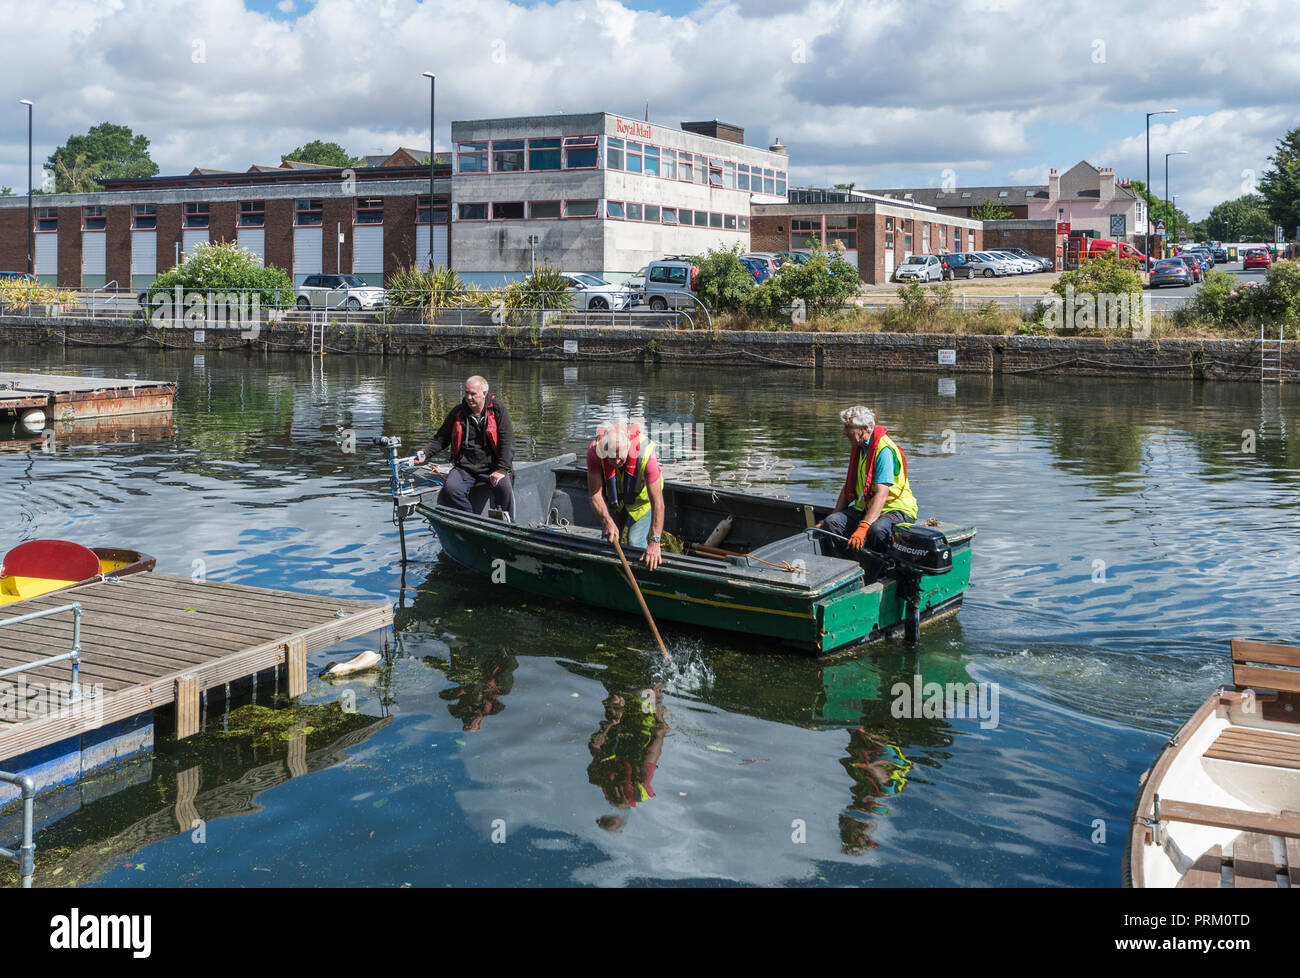 Elderley uomini in barca la raccolta rifiuti di acqua pulita in Chichester Canal a Chichester, West Sussex, in Inghilterra, Regno Unito. Foto Stock